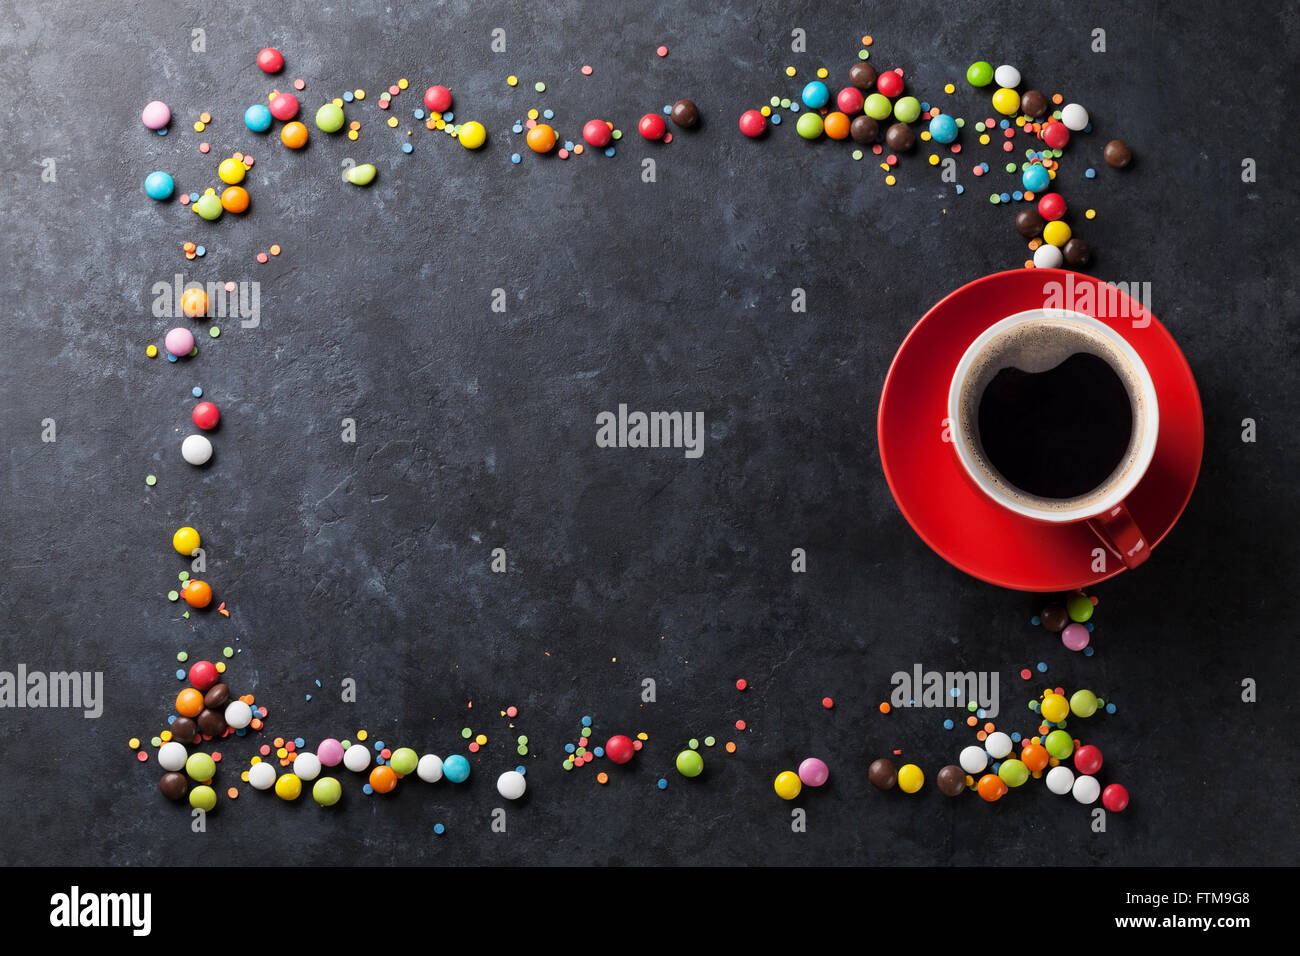 Bunte Bonbons Rahmen und Kaffee Tasse auf Stein Hintergrund. Draufsicht mit Textfreiraum Stockfoto